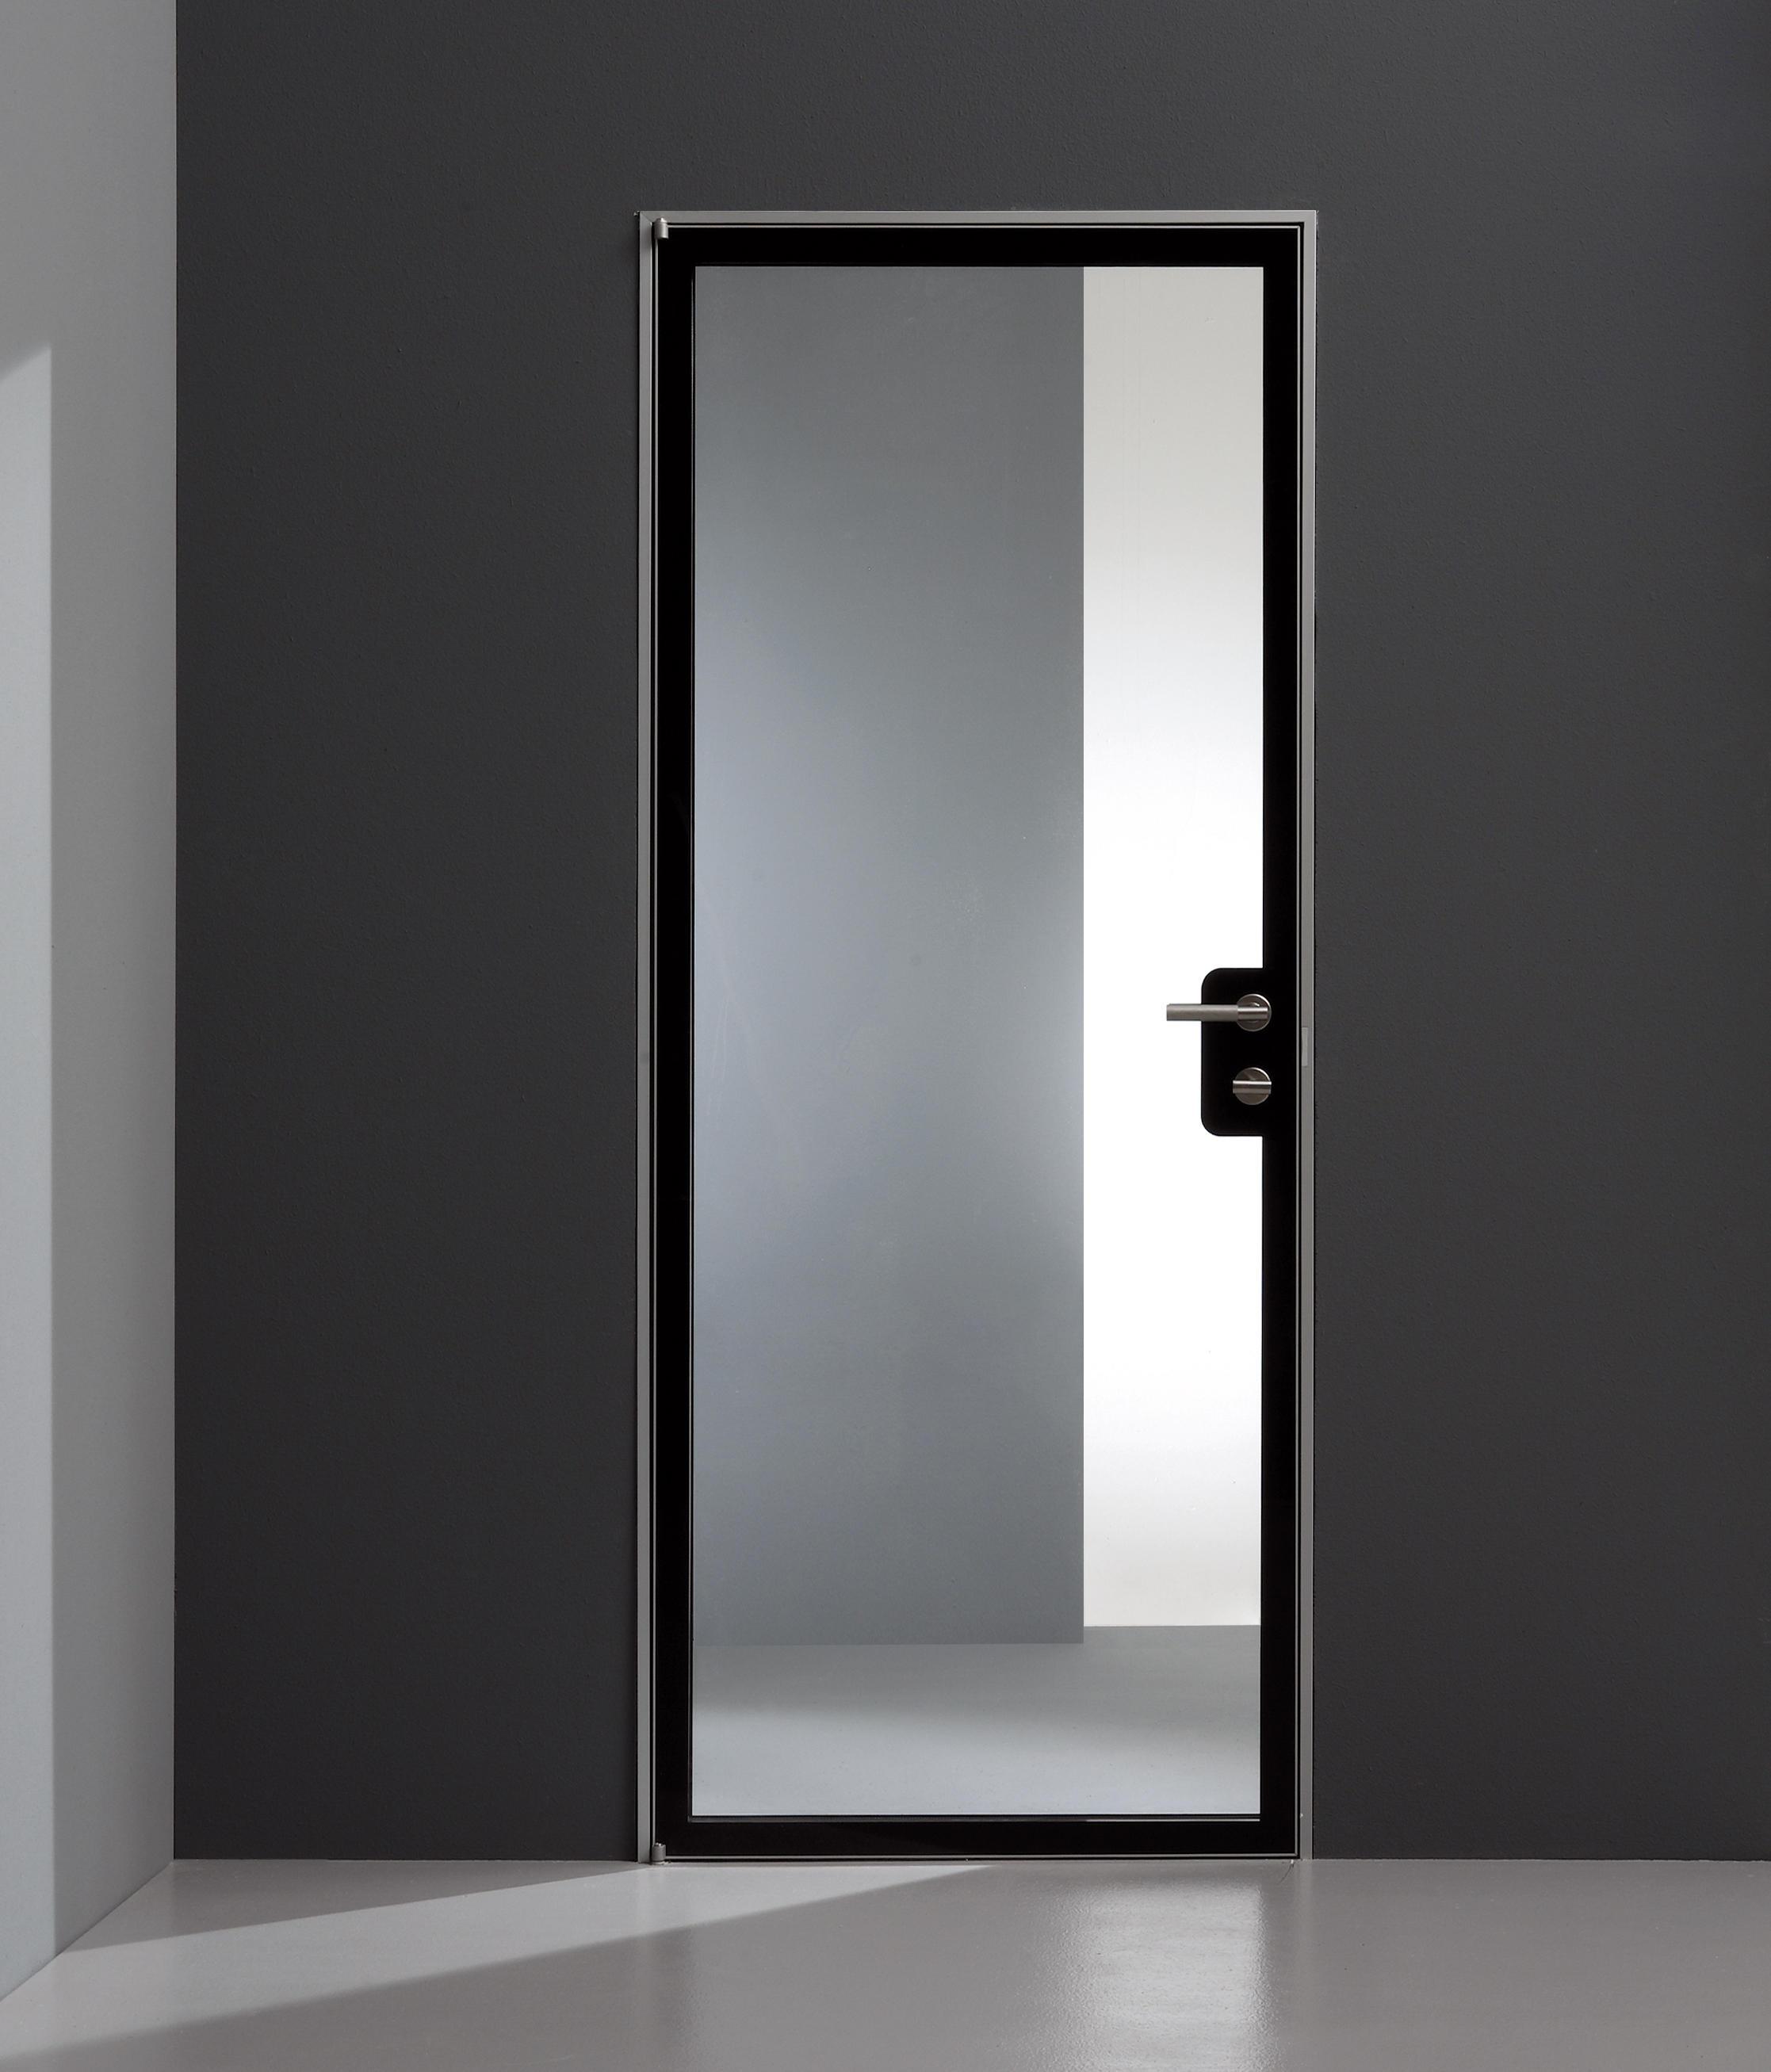 Дверь стекло межкомнатная алюминиевая. Дверь planus модель Cinque. Скрытая зеркальная дверь. Скрытая дверь с зеркалом. Скрытые двери межкомнатные.